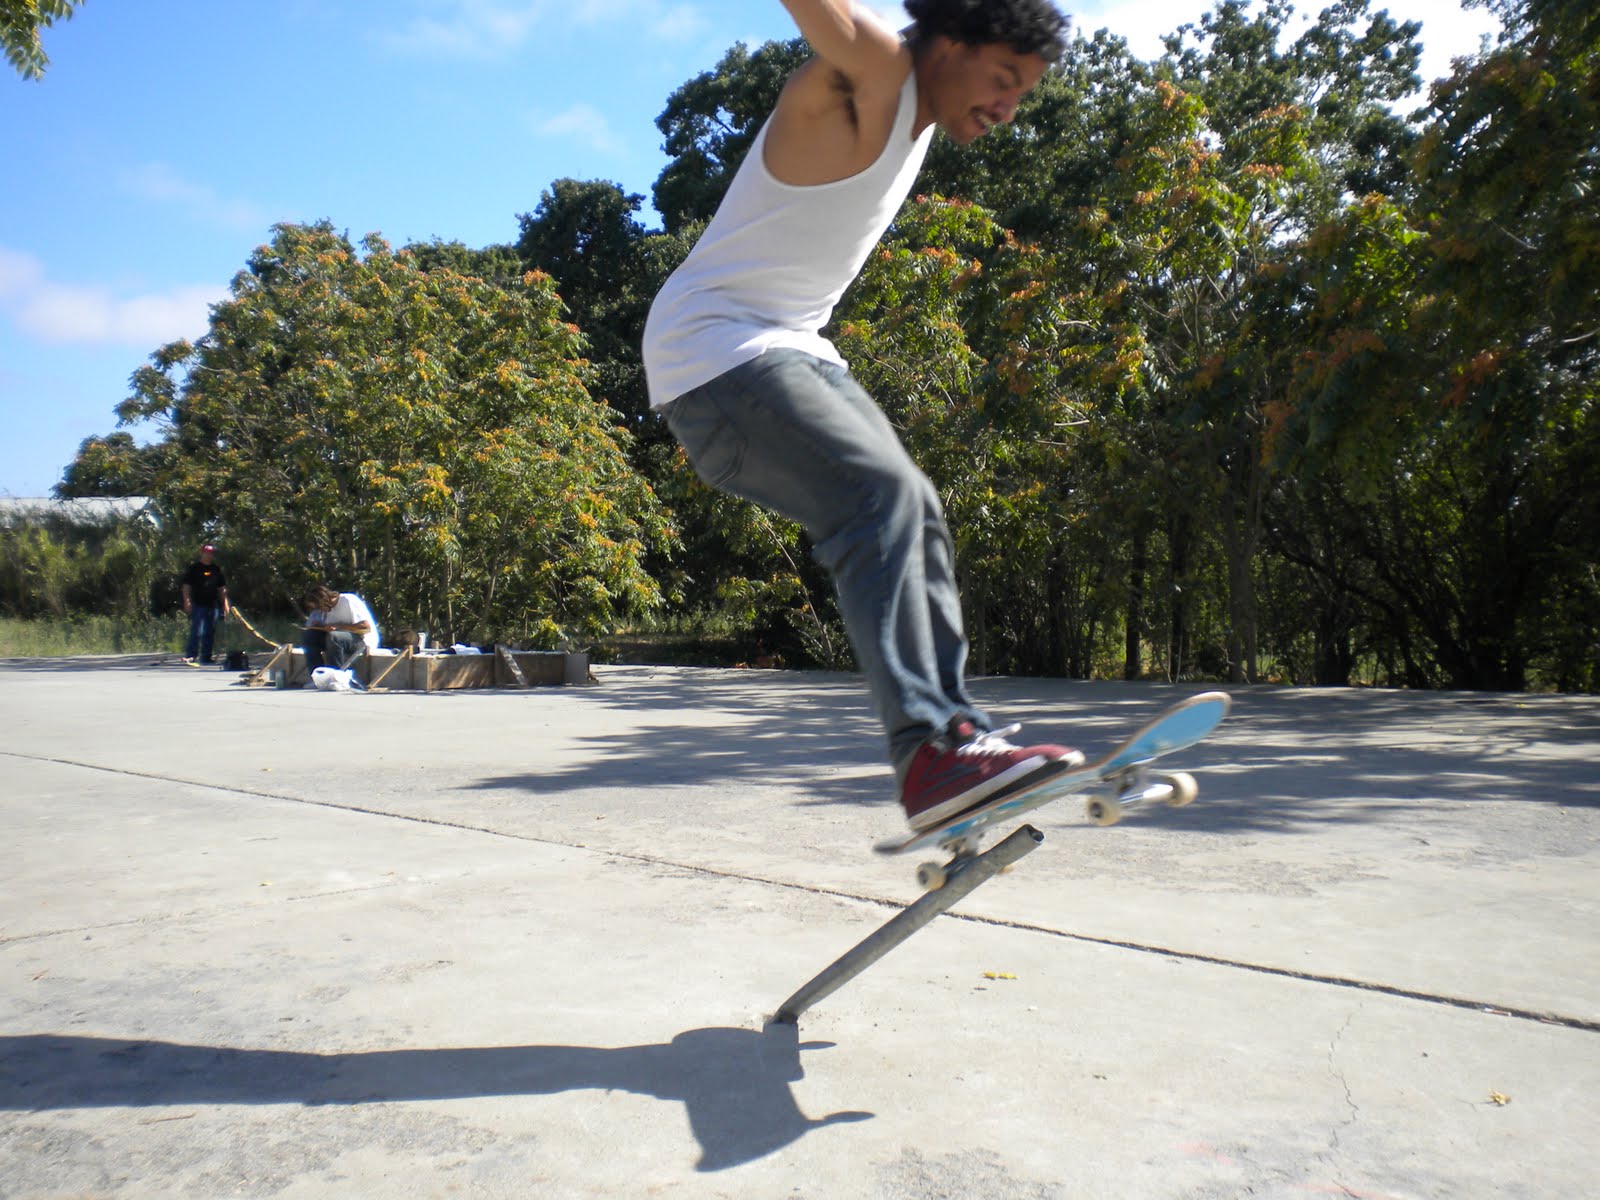 Jumpin skateboarder photo